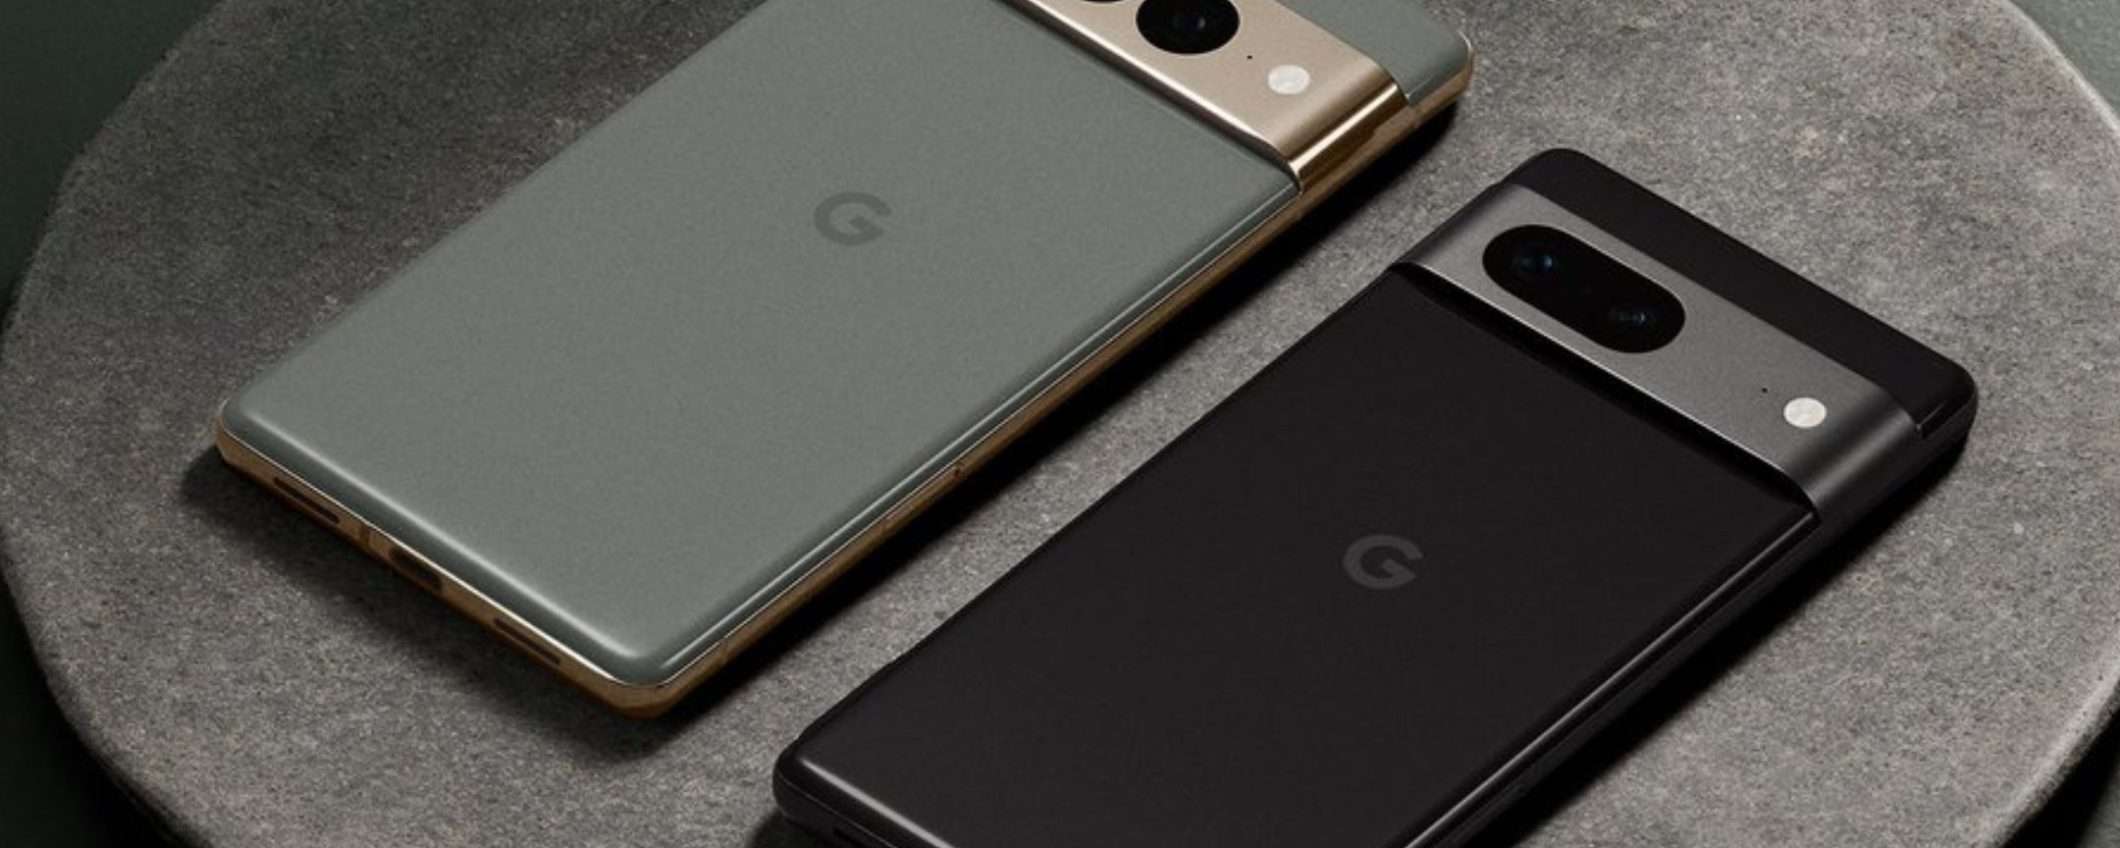 Google Pixel 7 è il TOP di gamma che sfida iPhone 14 Pro (-6%)